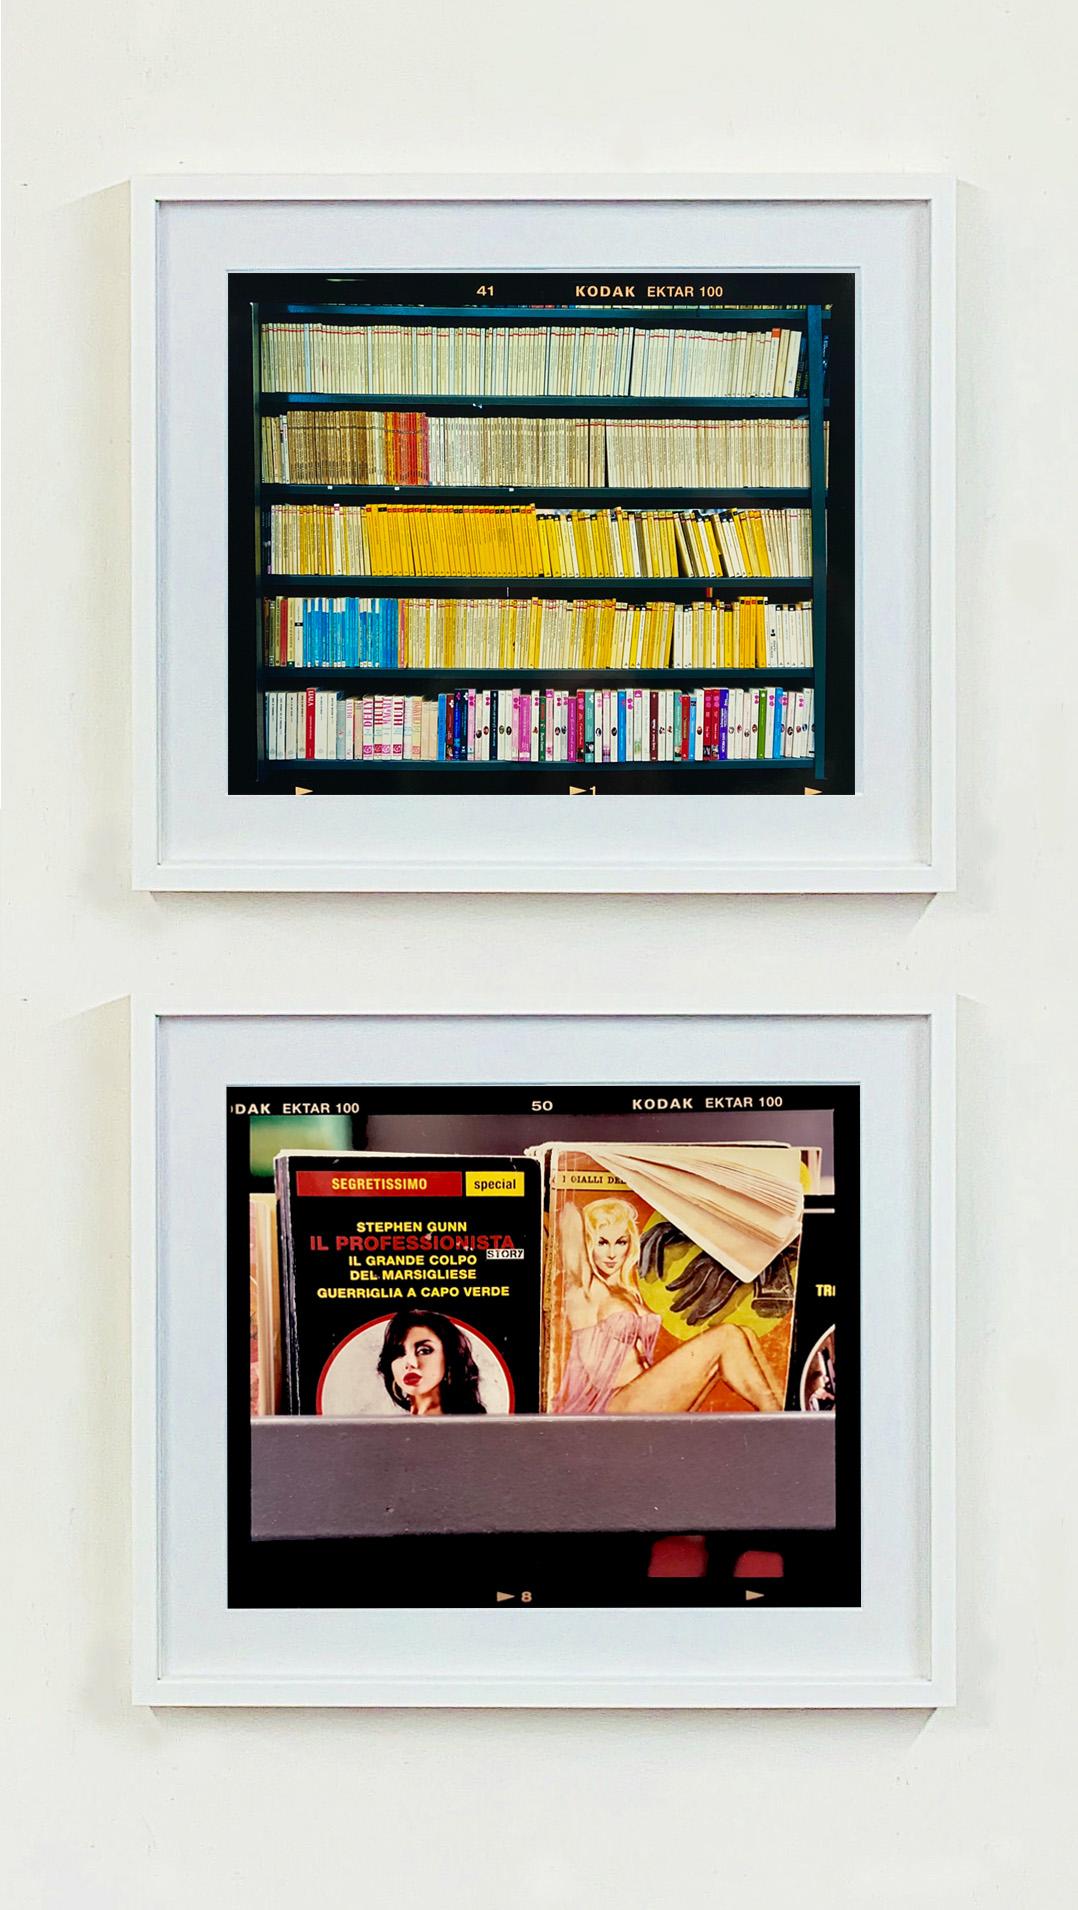 The Last Kiss, Mailand - Buch Kiosk, italienische Farbfotografie (Schwarz), Color Photograph, von Richard Heeps